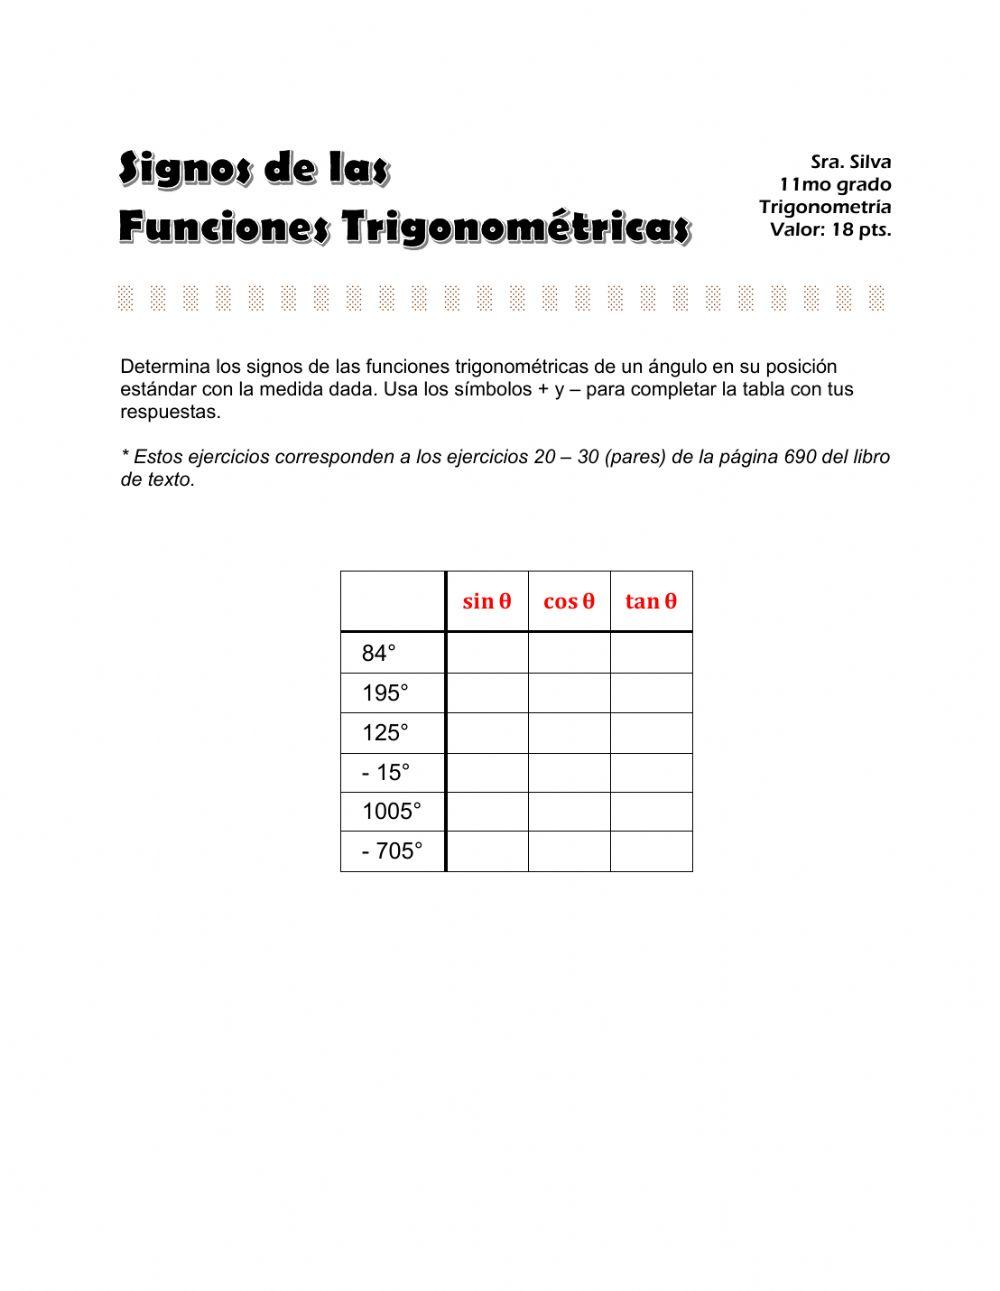 Funciones Trigonométricas - Signos